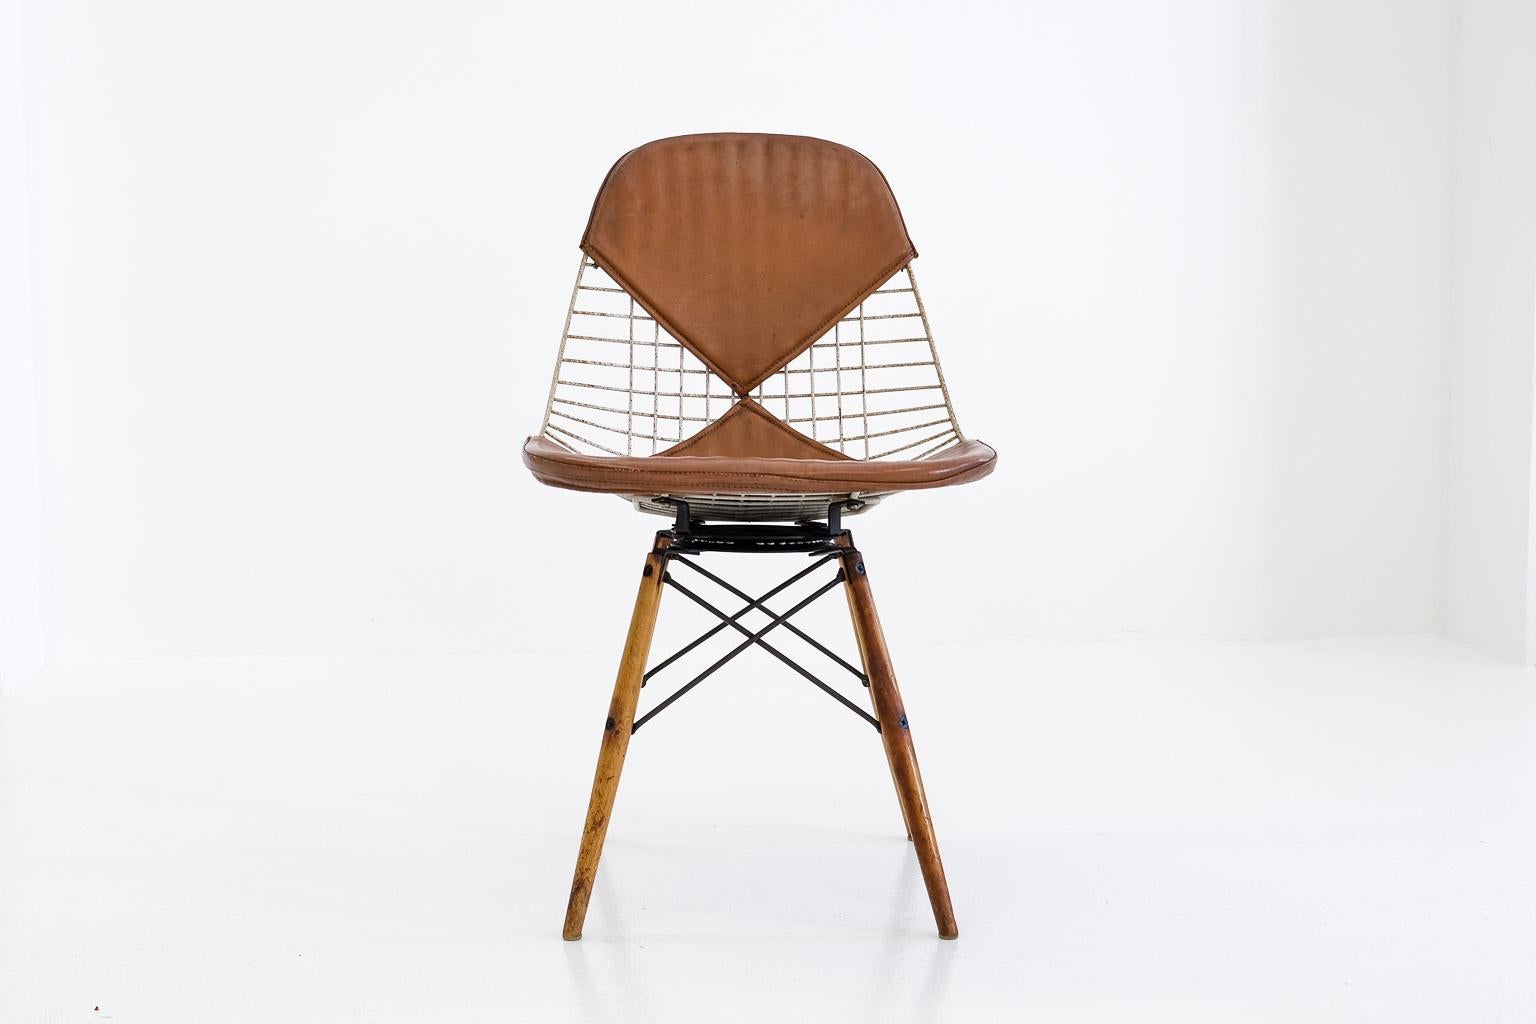 Pkw-2 Pivoting K-Wire Wood Base Side Chair, Eames Herman Miller, Bikini, Seng For Sale 2